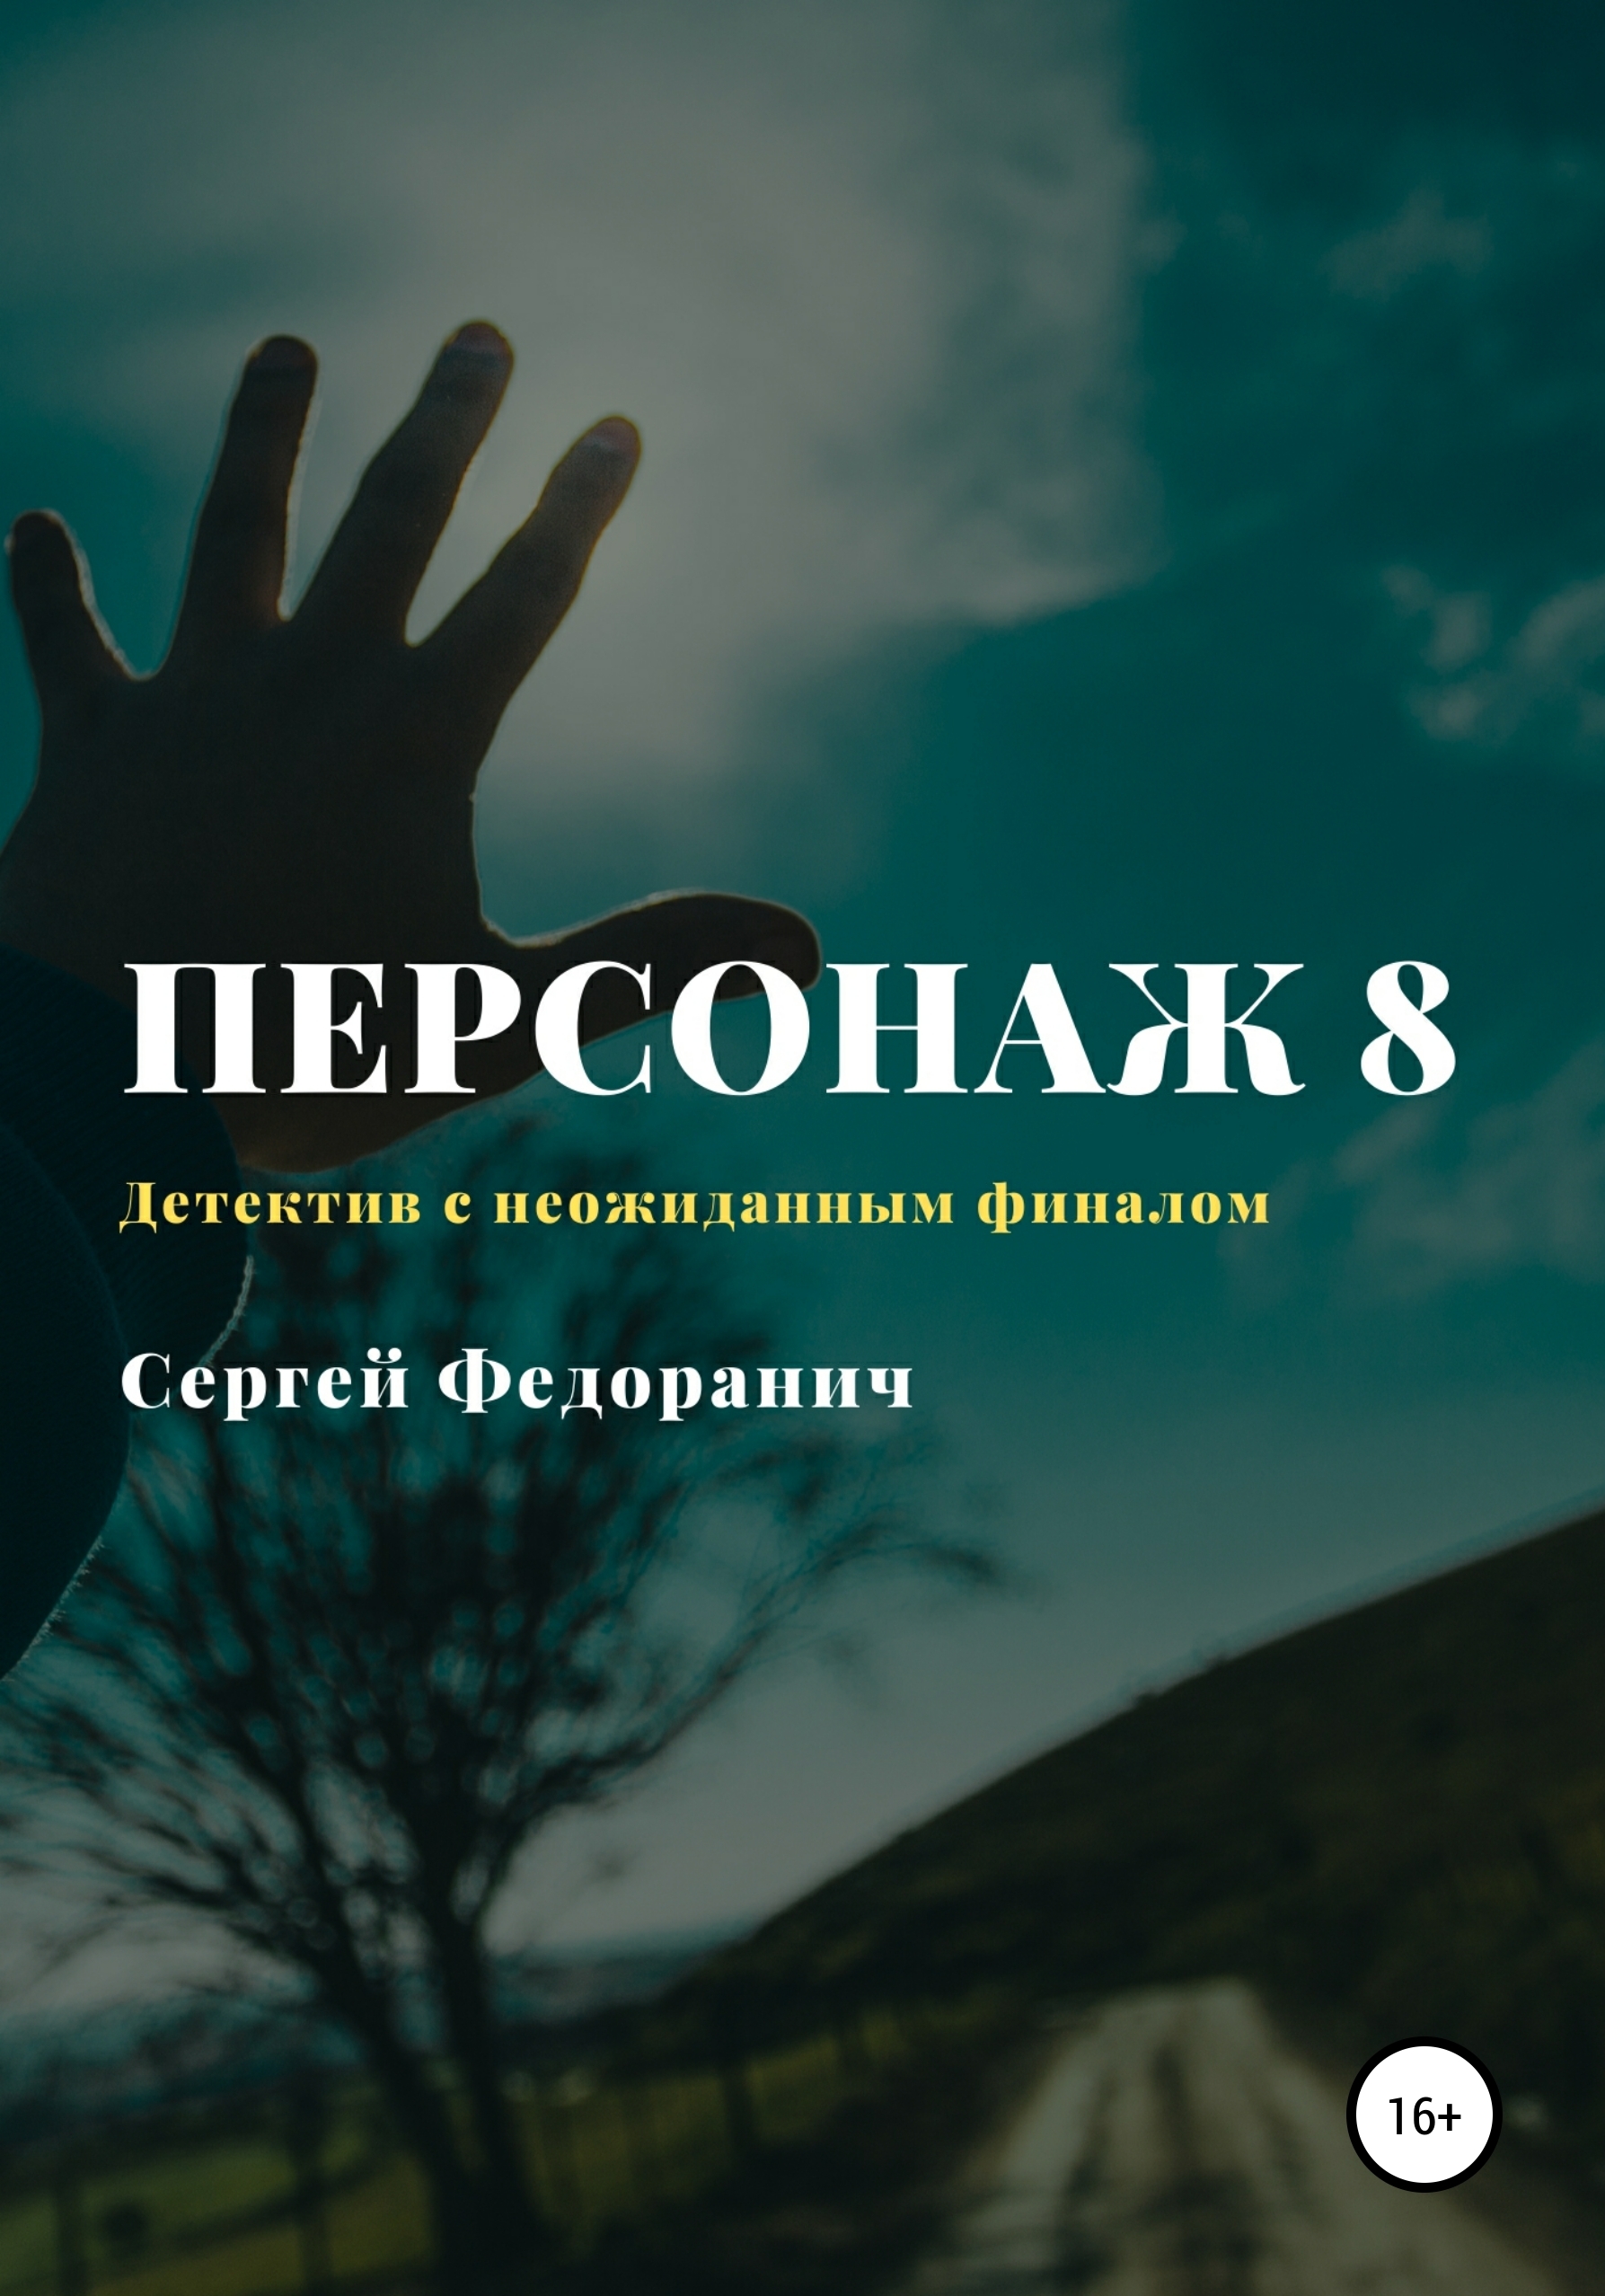 Скачать Персонаж 8 - Сергей Федоранич